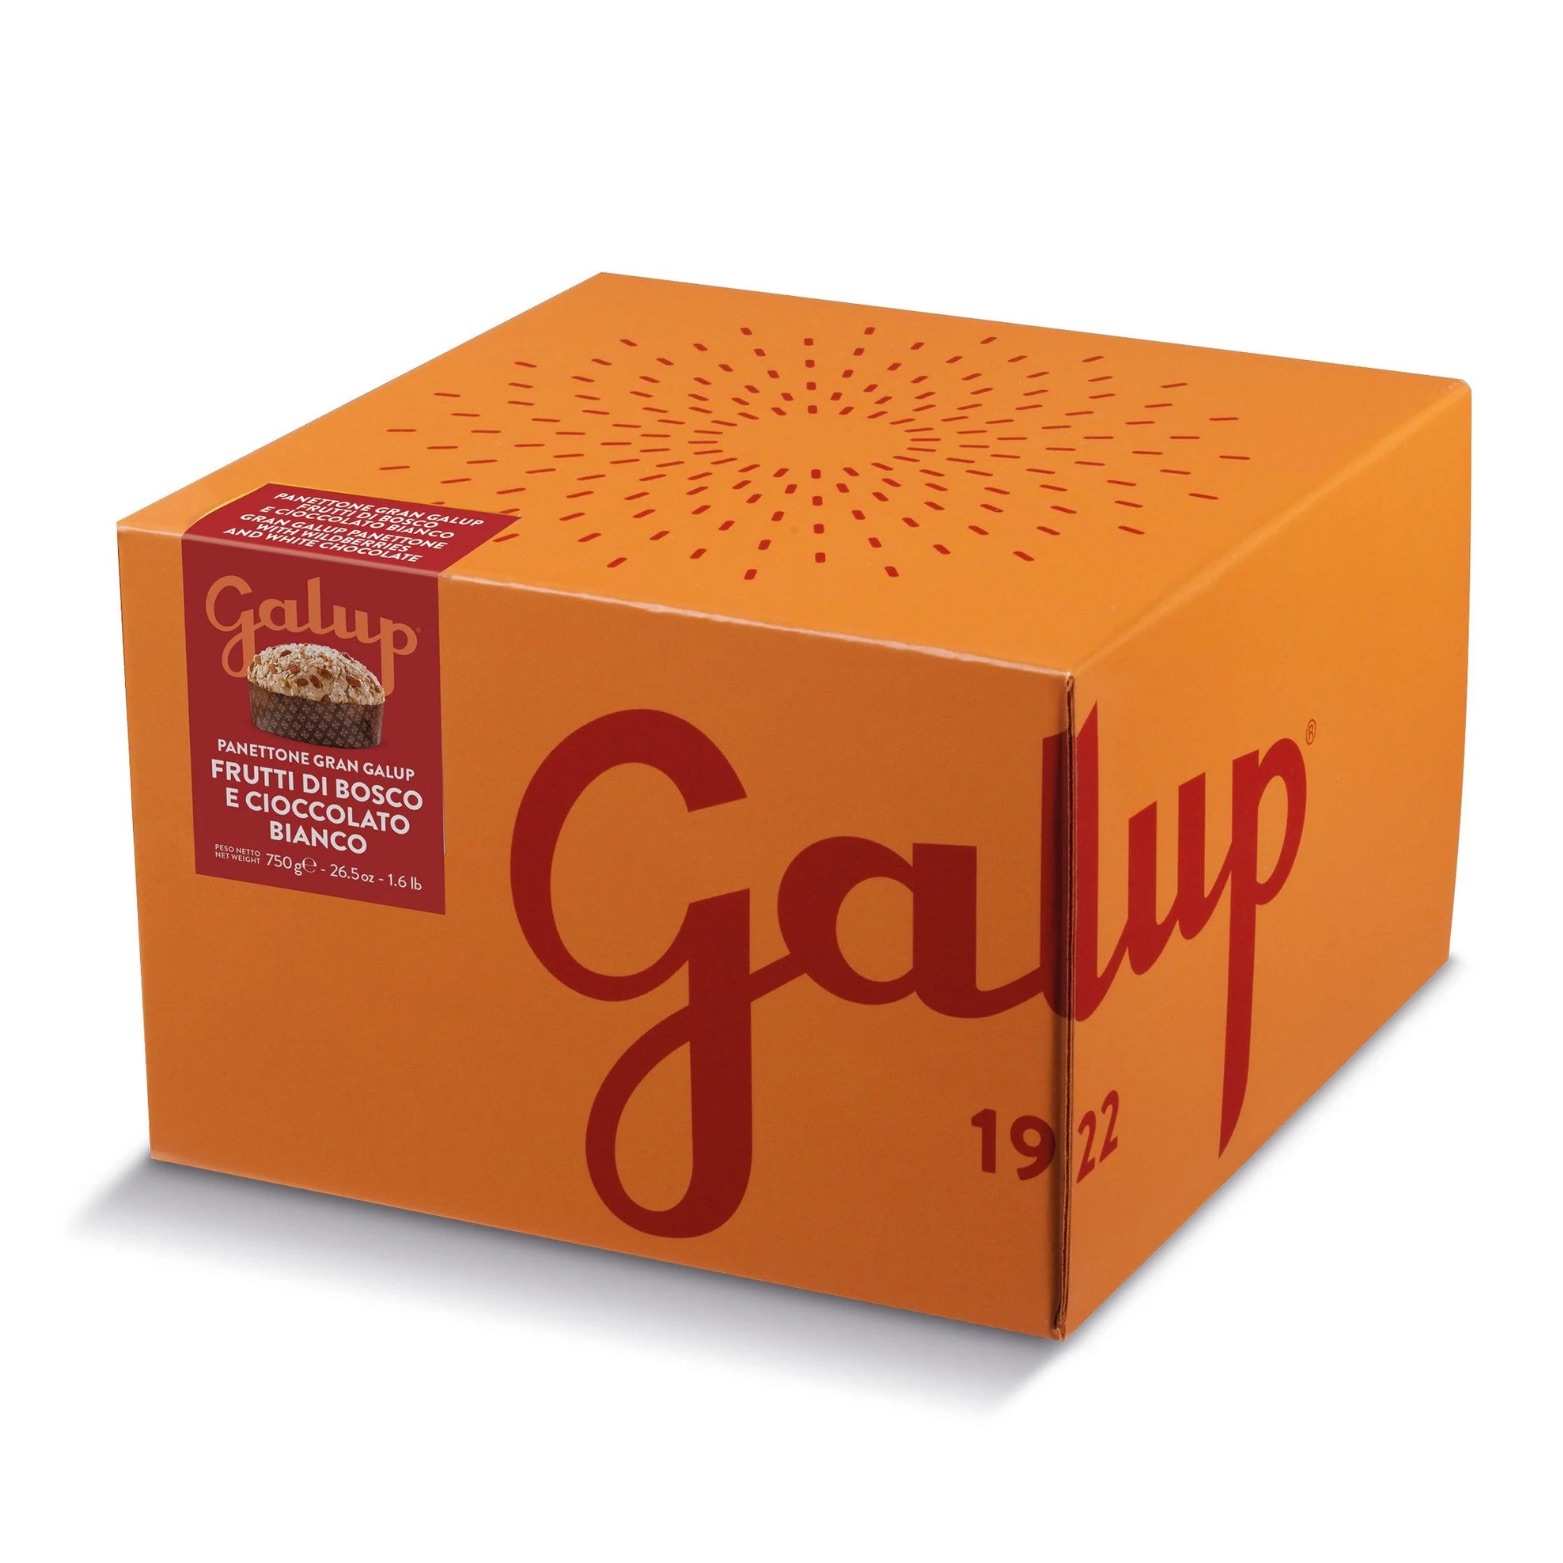 Panettone GRAN GALUP mit Waldfrüchten und weißer Schokolade – GALUP, 750g